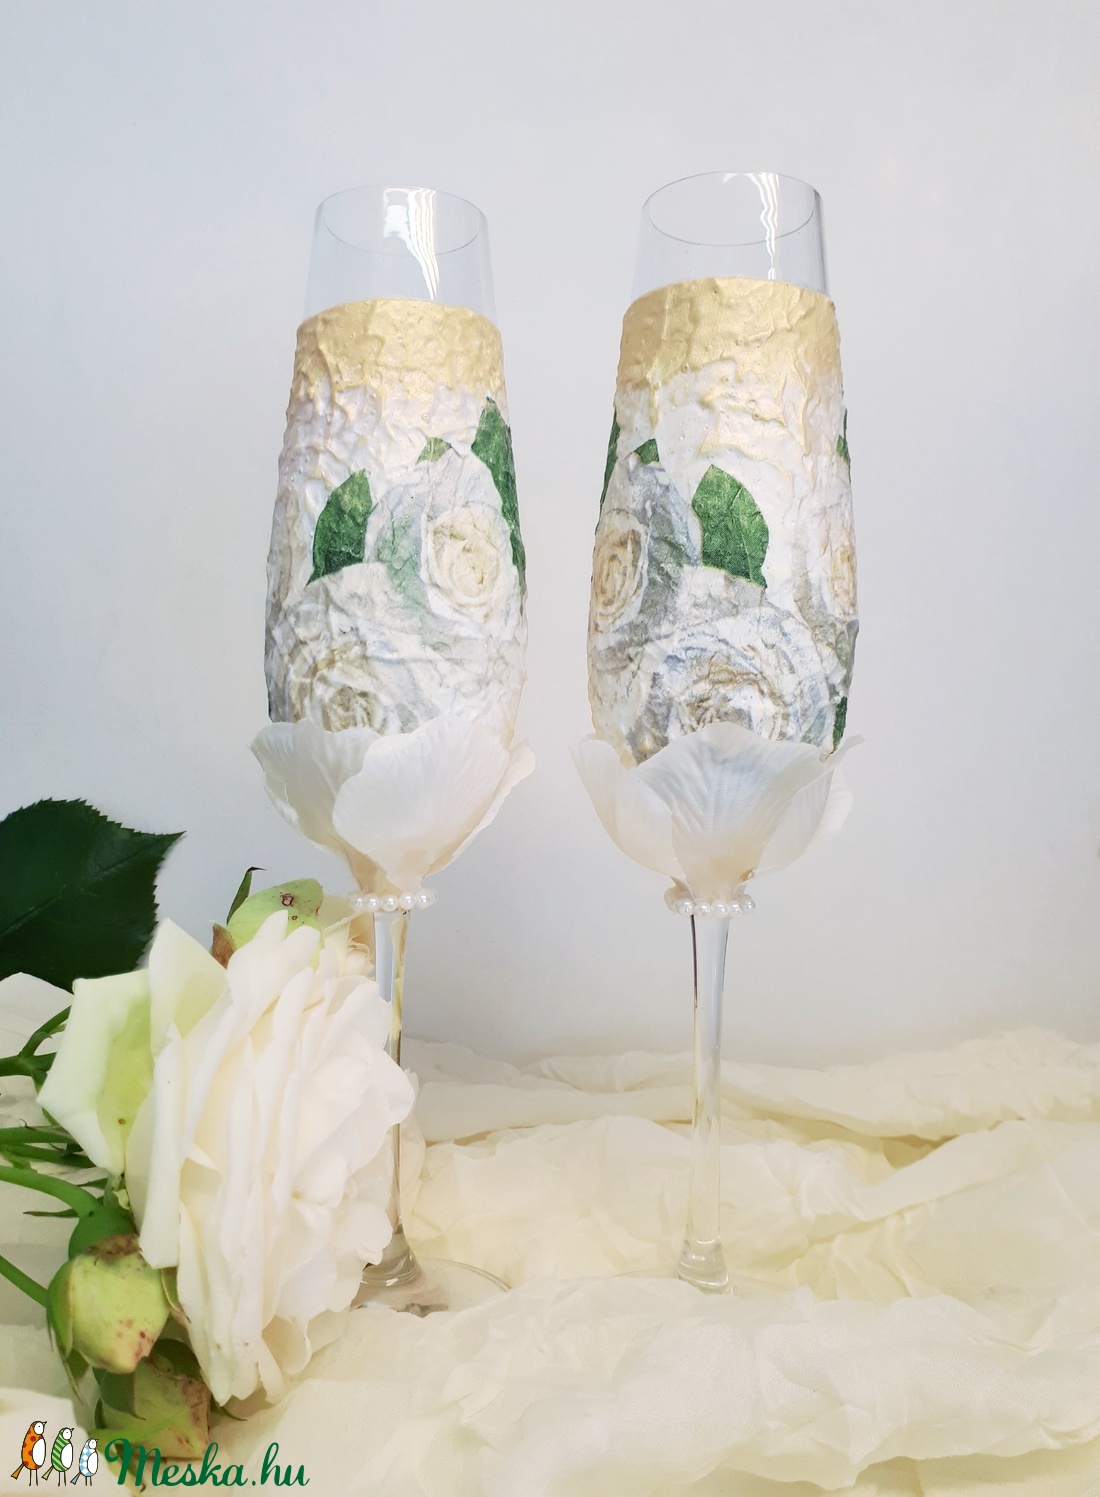 Fehér rózsa pezsgős pohár esküvőre, eljegyzésre, leánybúcsúba, legénybúcsúba, nászajándékba. - esküvő - dekoráció - tálalás - Meska.hu